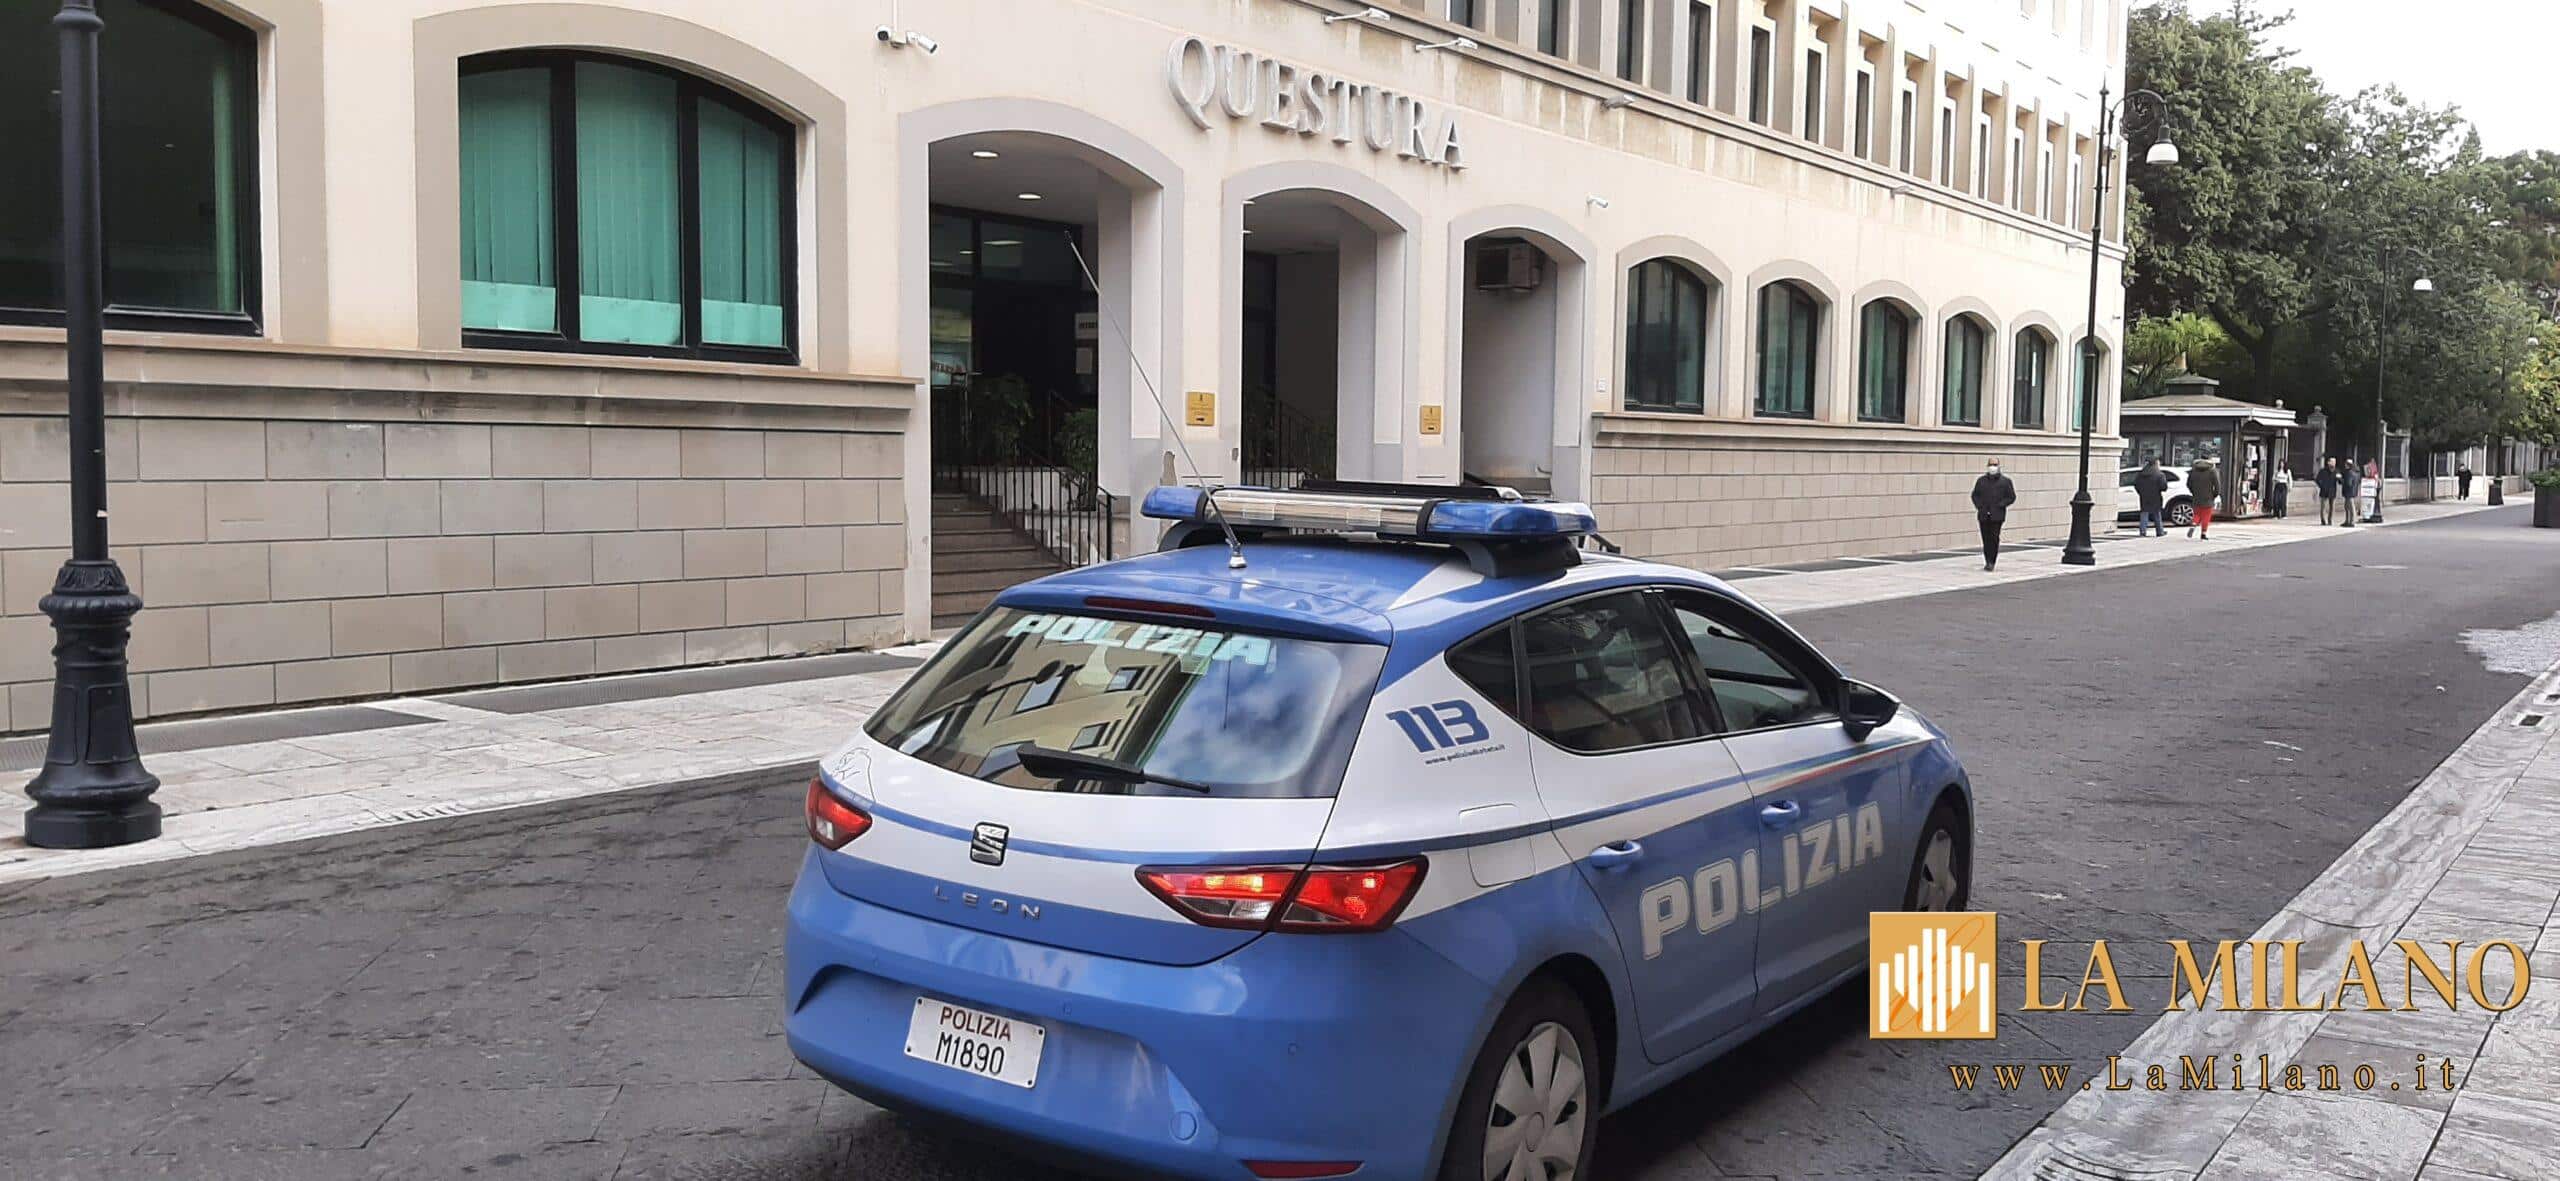 Reggio Calabria: la Polizia di Stato arresta una donna 48enne e un uomo 61enne per sequestro di persona e maltrattamenti in famiglia.